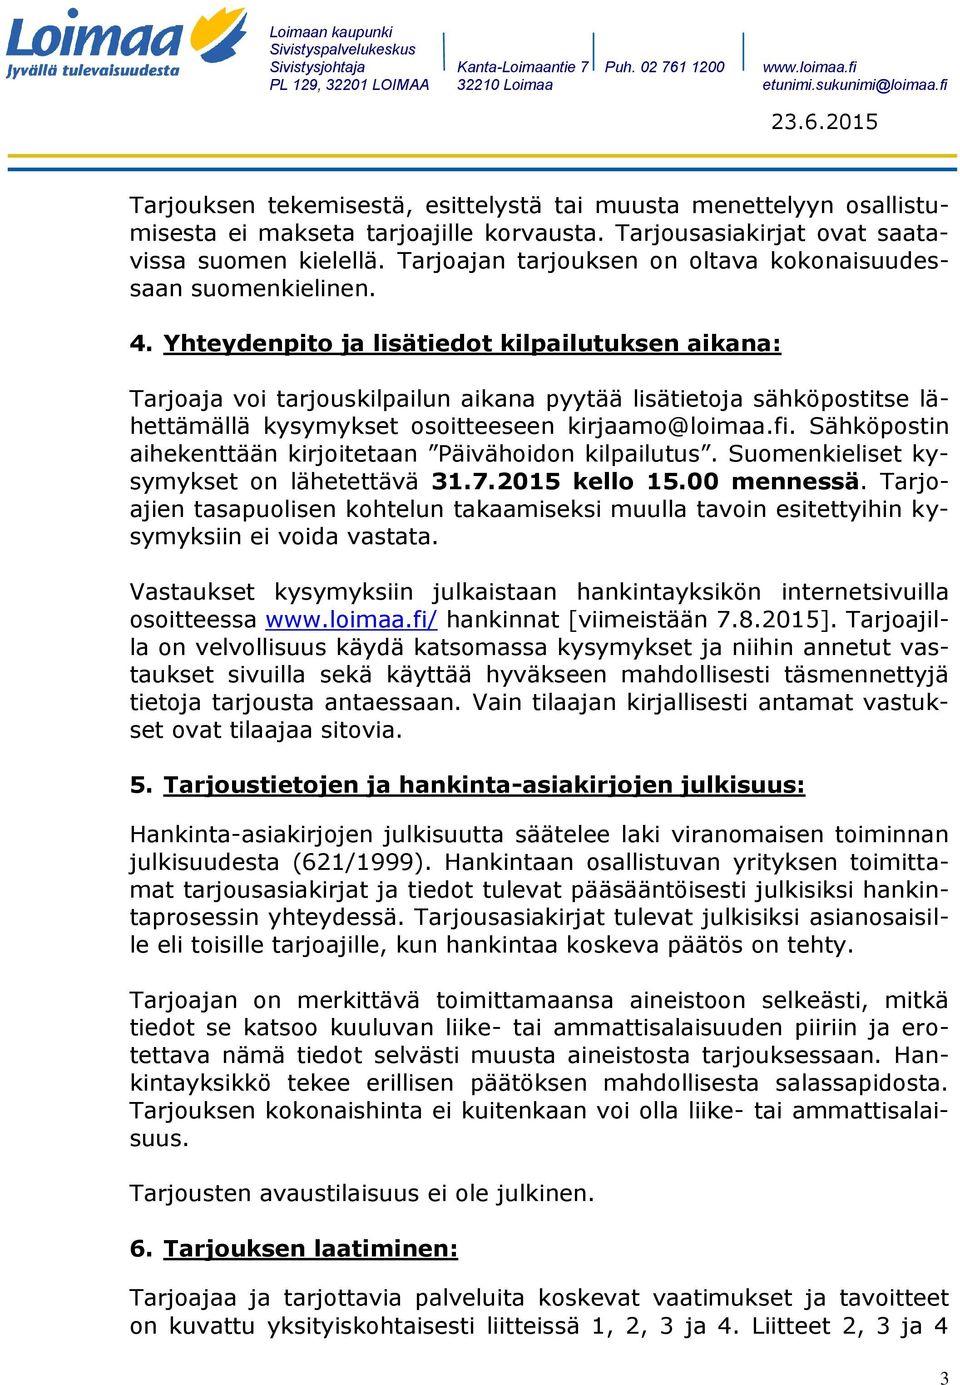 Yhteydenpito ja lisätiedot kilpailutuksen aikana: Tarjoaja voi tarjouskilpailun aikana pyytää lisätietoja sähköpostitse lähettämällä kysymykset osoitteeseen kirjaamo@loimaa.fi.